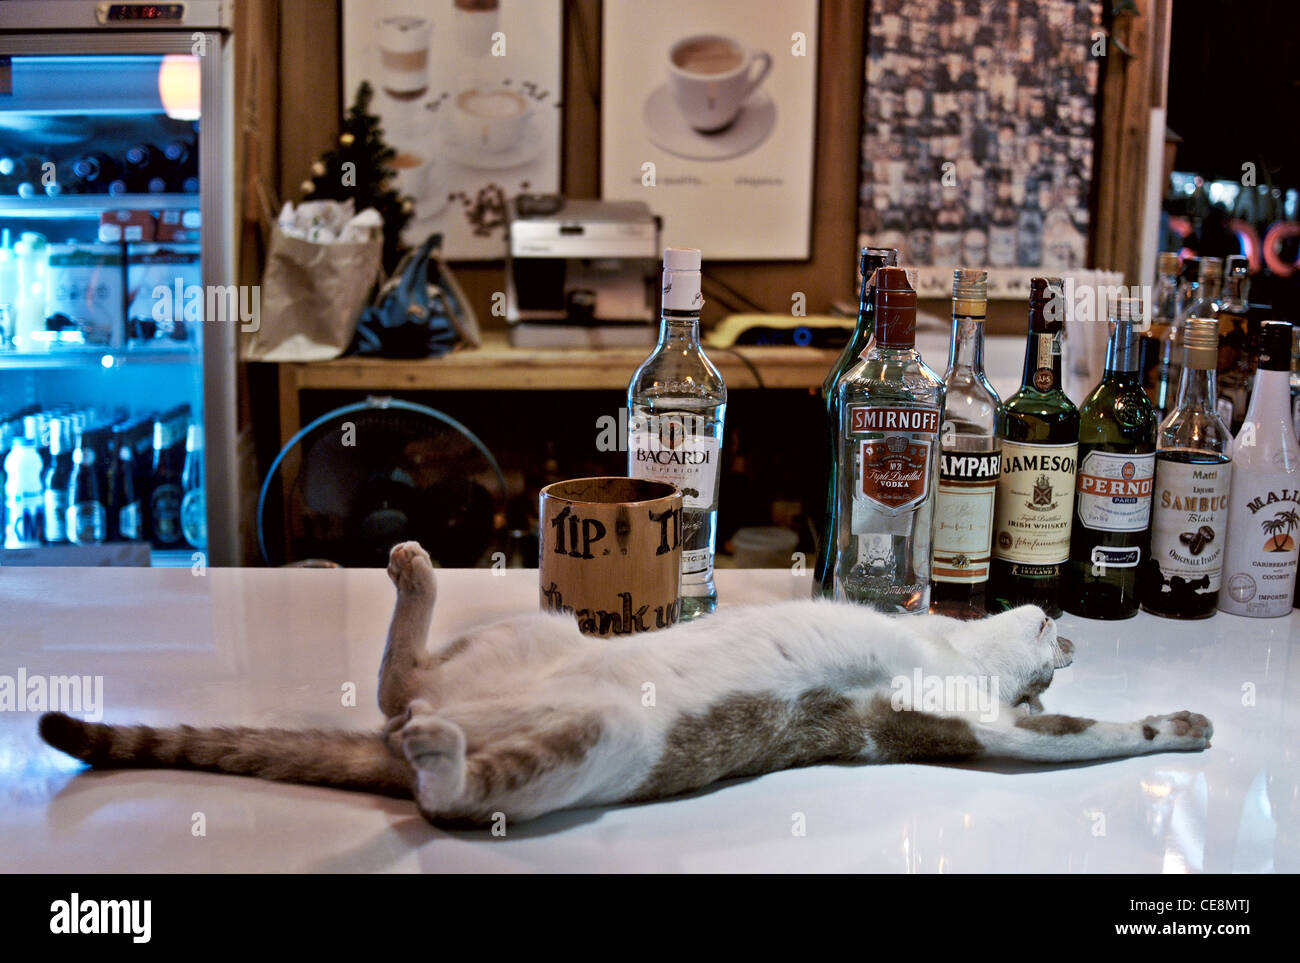 Lustiges Tier. Katze, die an einer Bierbar schläft, scheint unter dem Einfluss von Alkohol betrunken zu sein. Thailand Südostasien Stockfoto